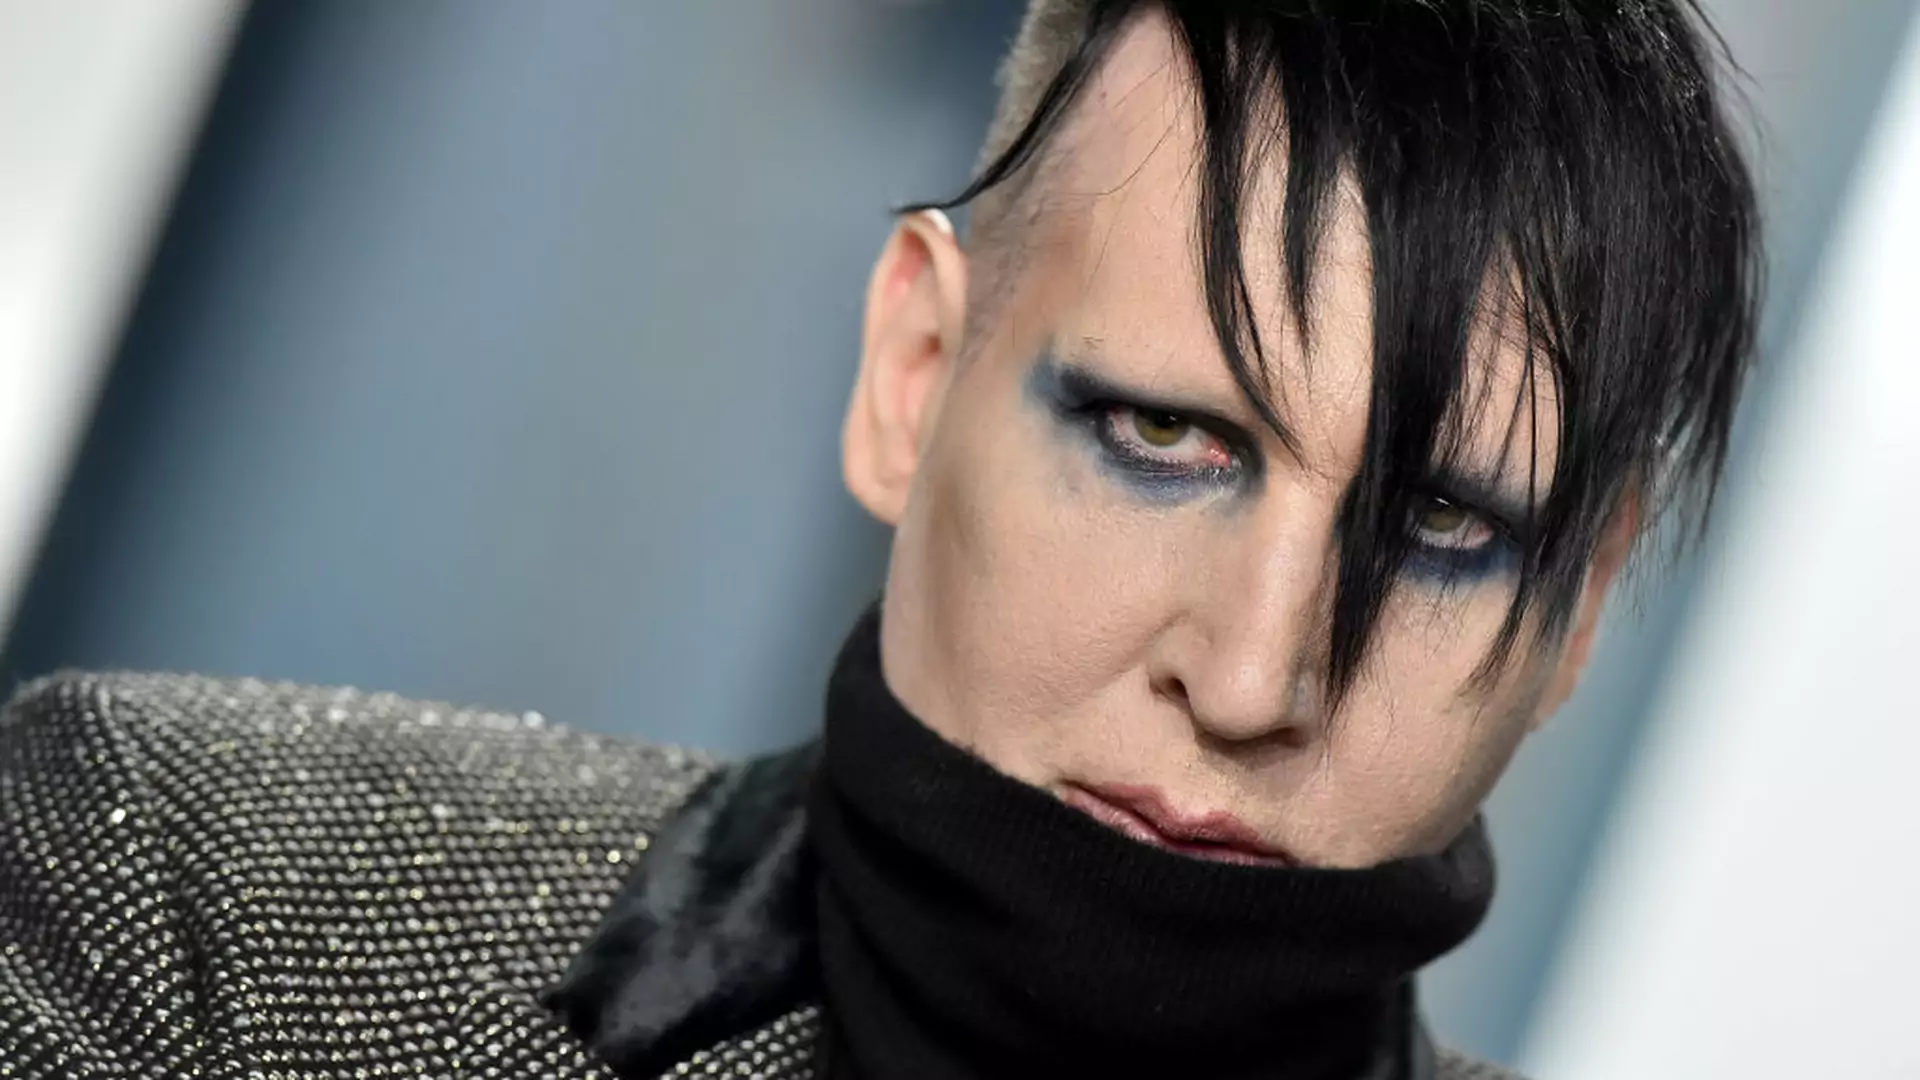 Wydano nakaz aresztowania Marilyna Mansona. Nie chodzi o przemoc seksualną